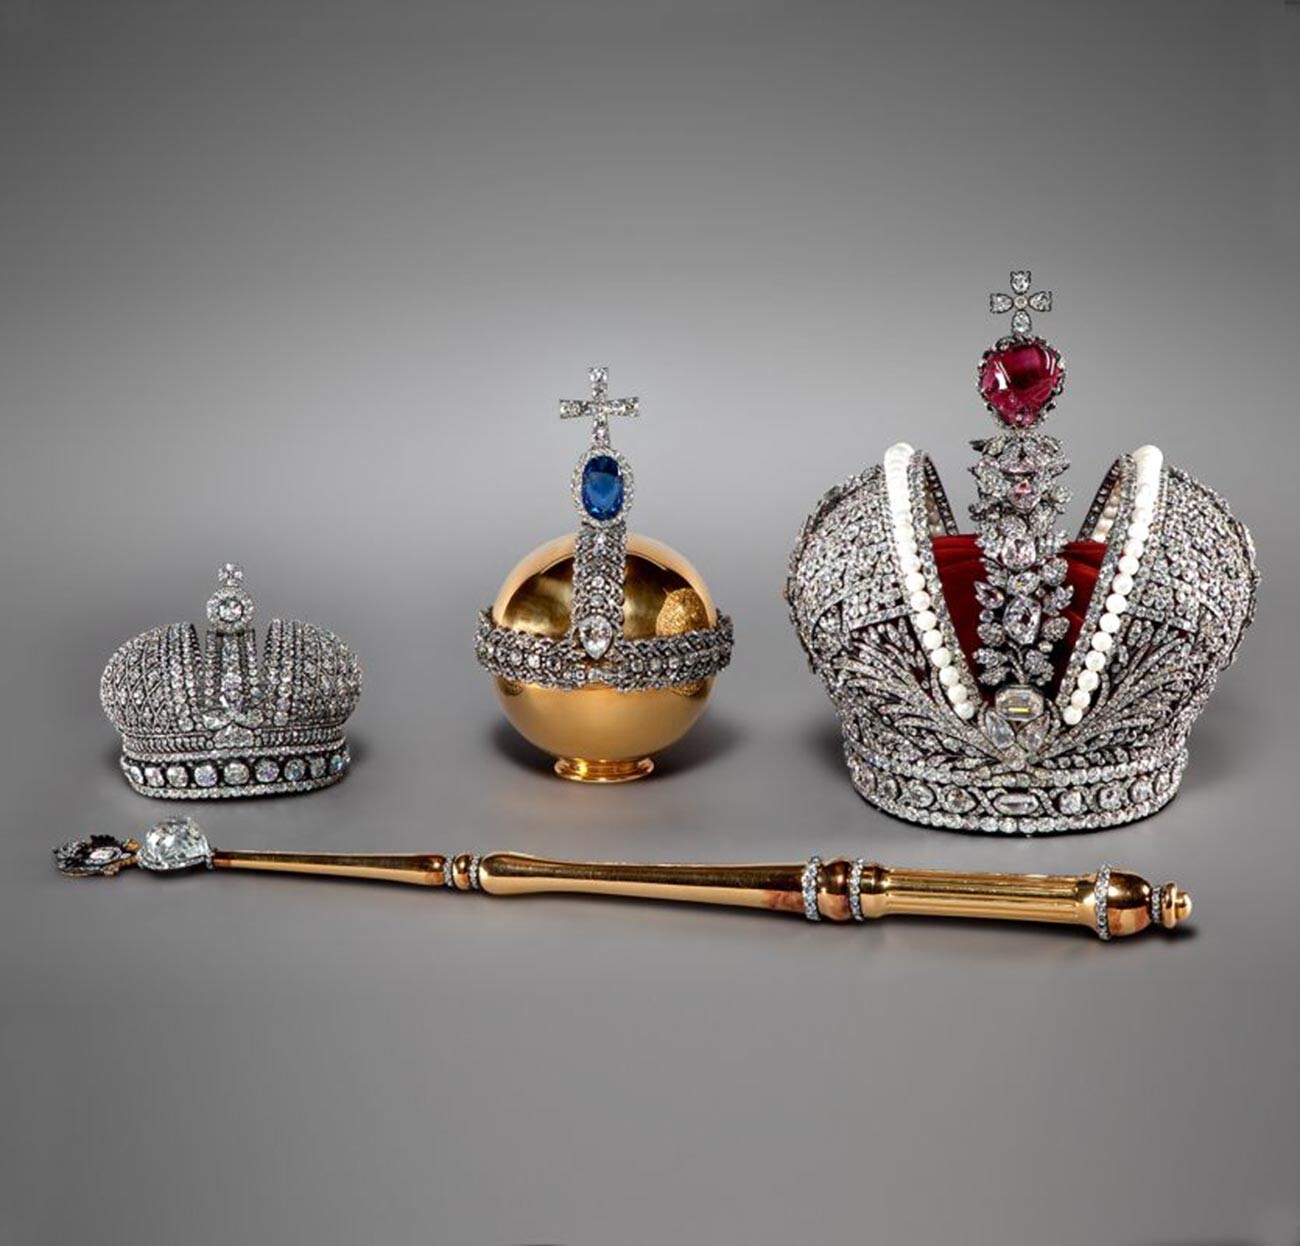 Les insignes de couronnement des tsars russes faisant partie de la collection des Musées du Kremlin